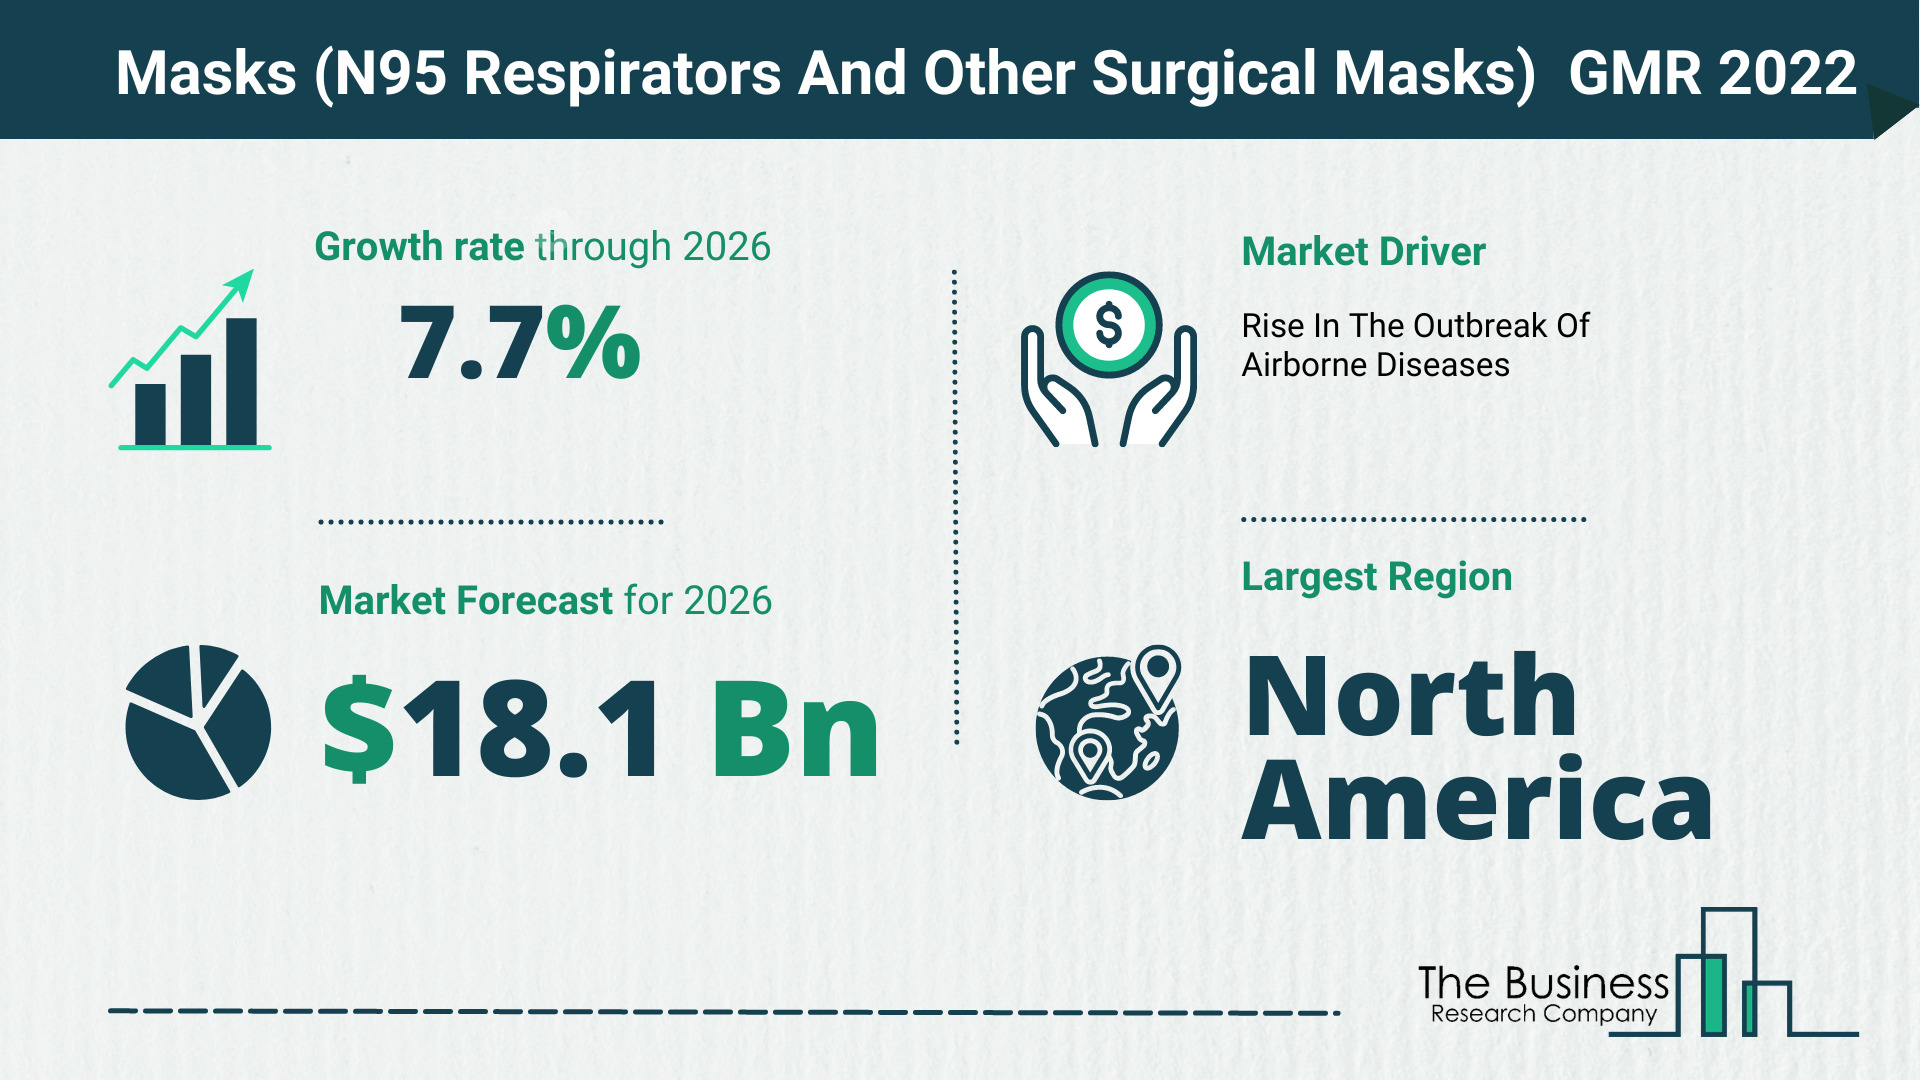 Global Masks (N95 Respirators And Other Surgical Masks) Market